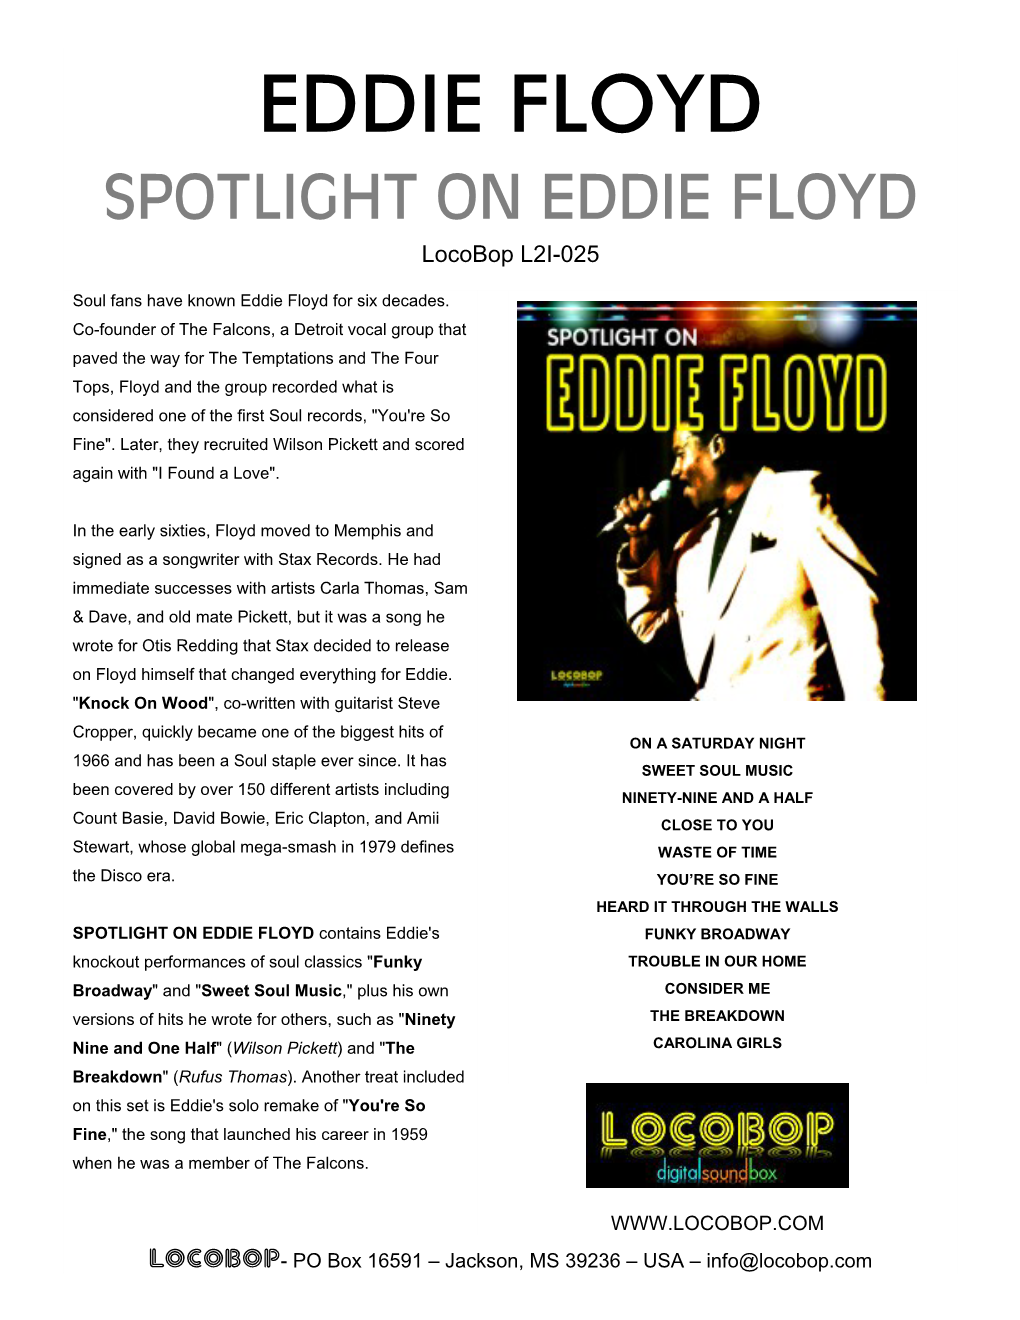 EDDIE FLOYD SPOTLIGHT on EDDIE FLOYD Locobop L2I-025